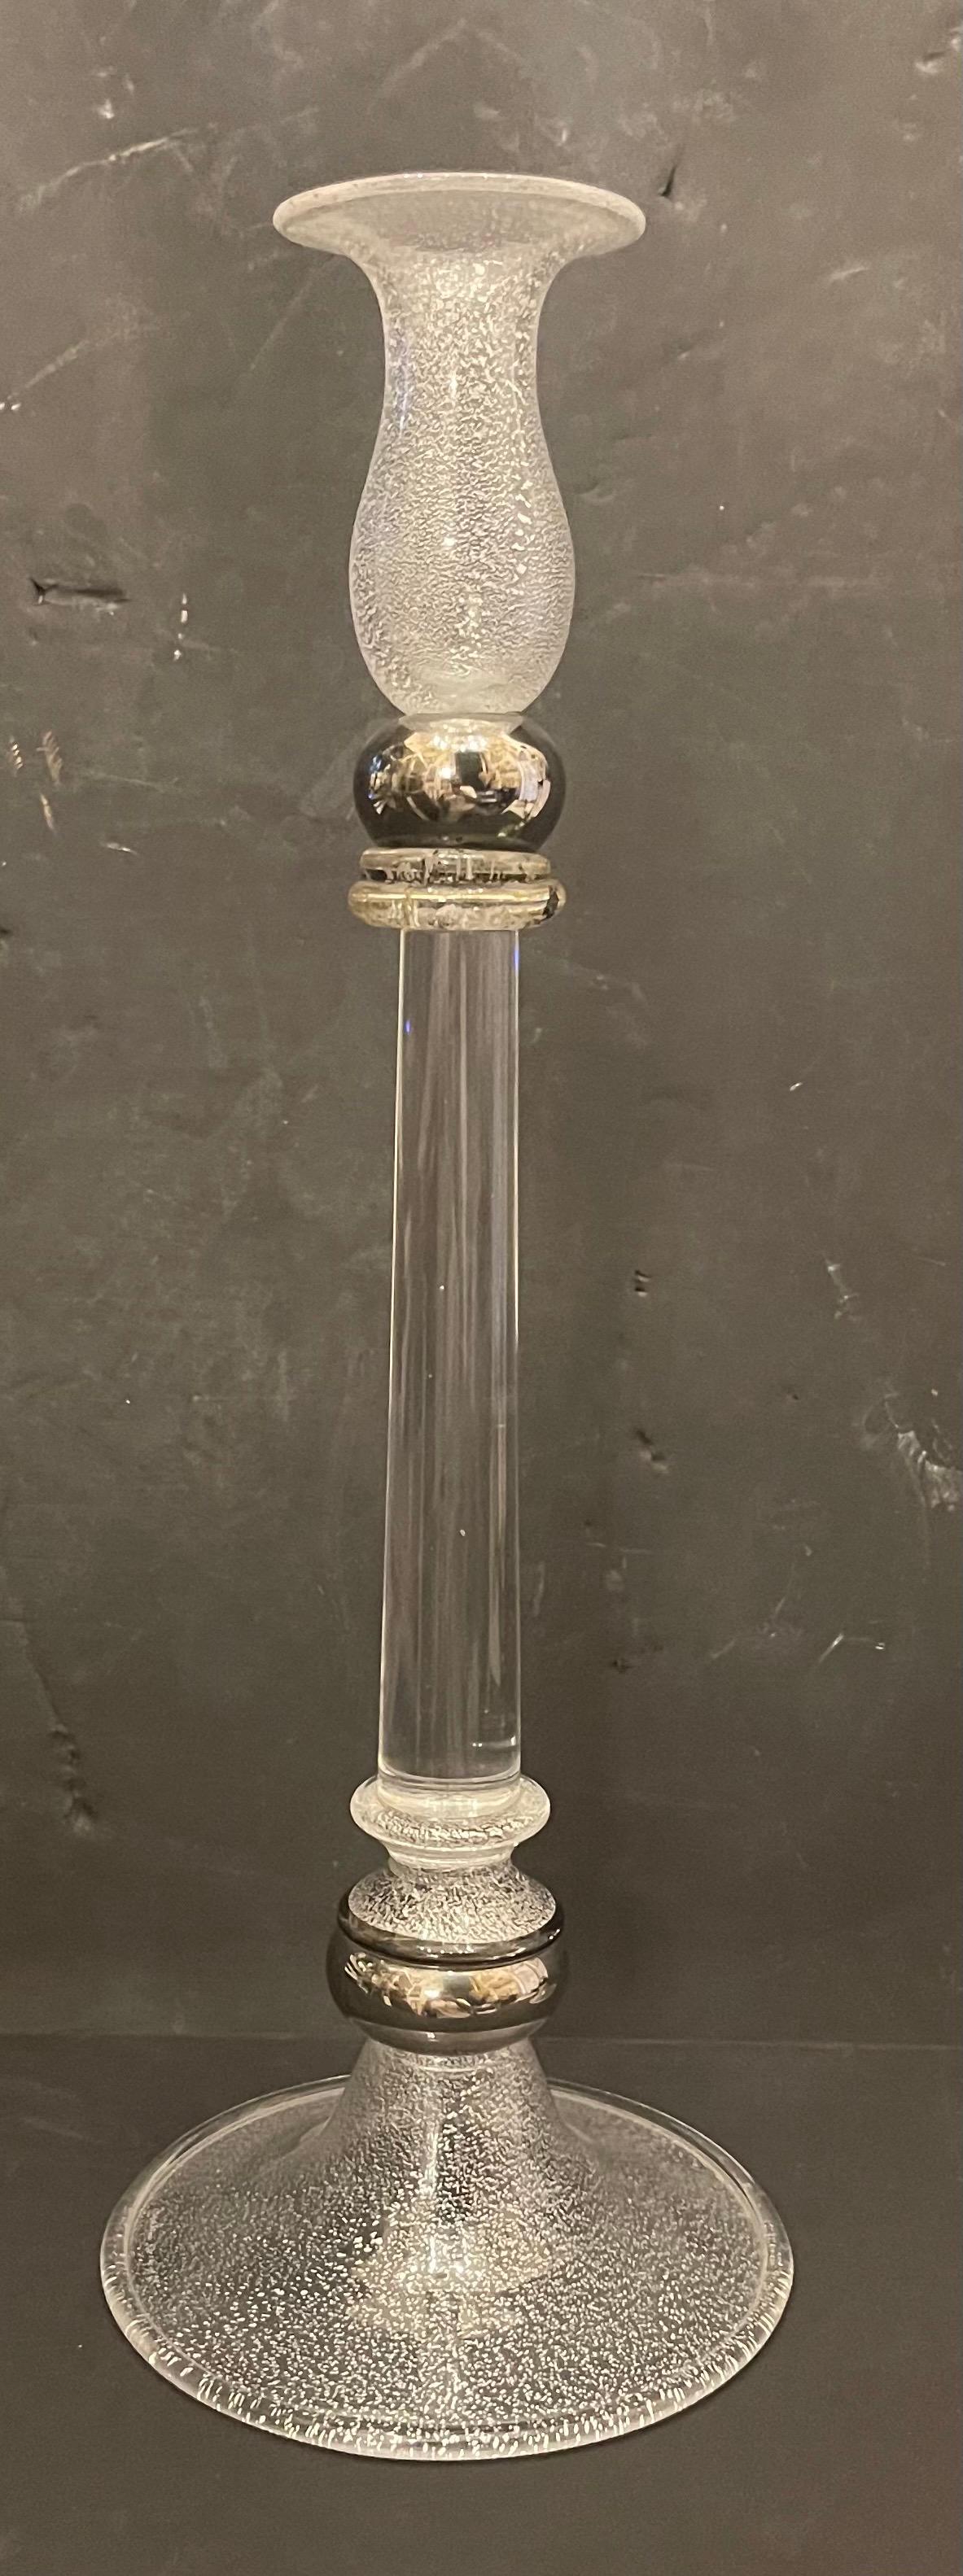 Ein wundervolles modernes Paar von Lorin Marsh Murano Clear & Silver Flake Art Glass Candlesticks in der Art und Weise und im Stil von Seguso / Barovier & Toso.
Sie sind signiert, die Unterschrift ist nur schwer zu erkennen.